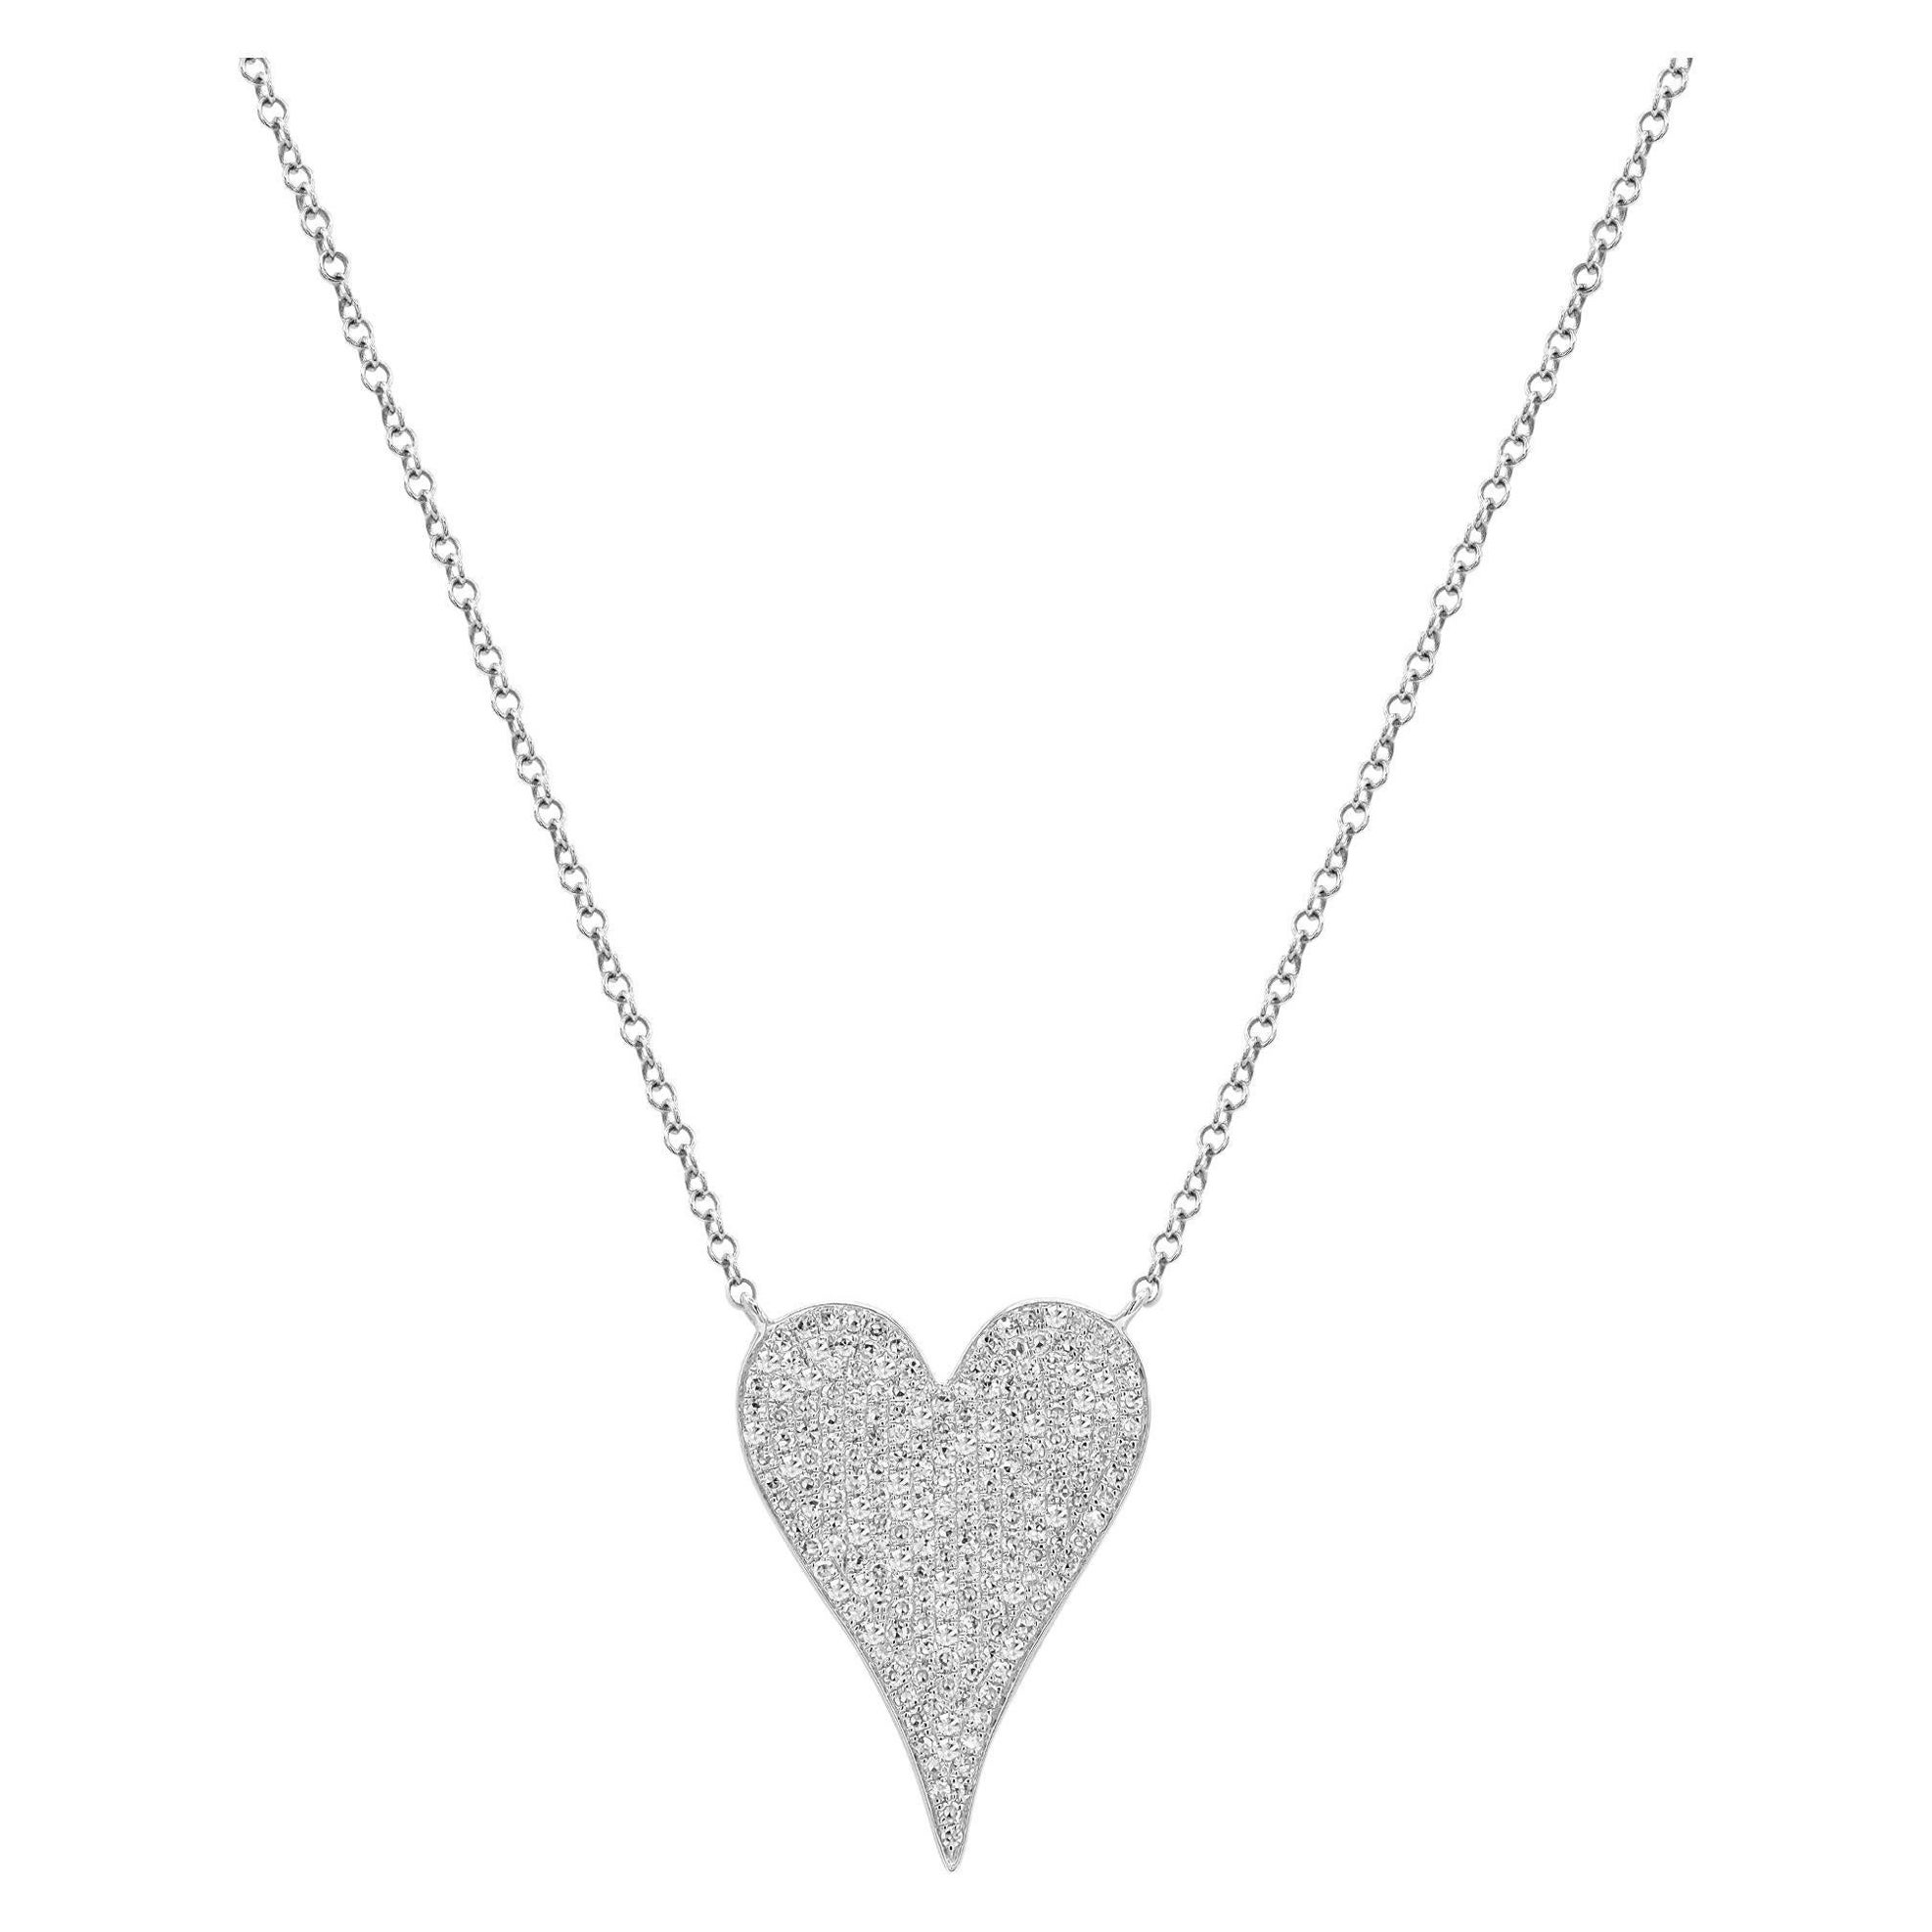 Rachel Koen Pave Diamond Heart Pendant Necklace 14K White Gold 0.21Cttw For Sale